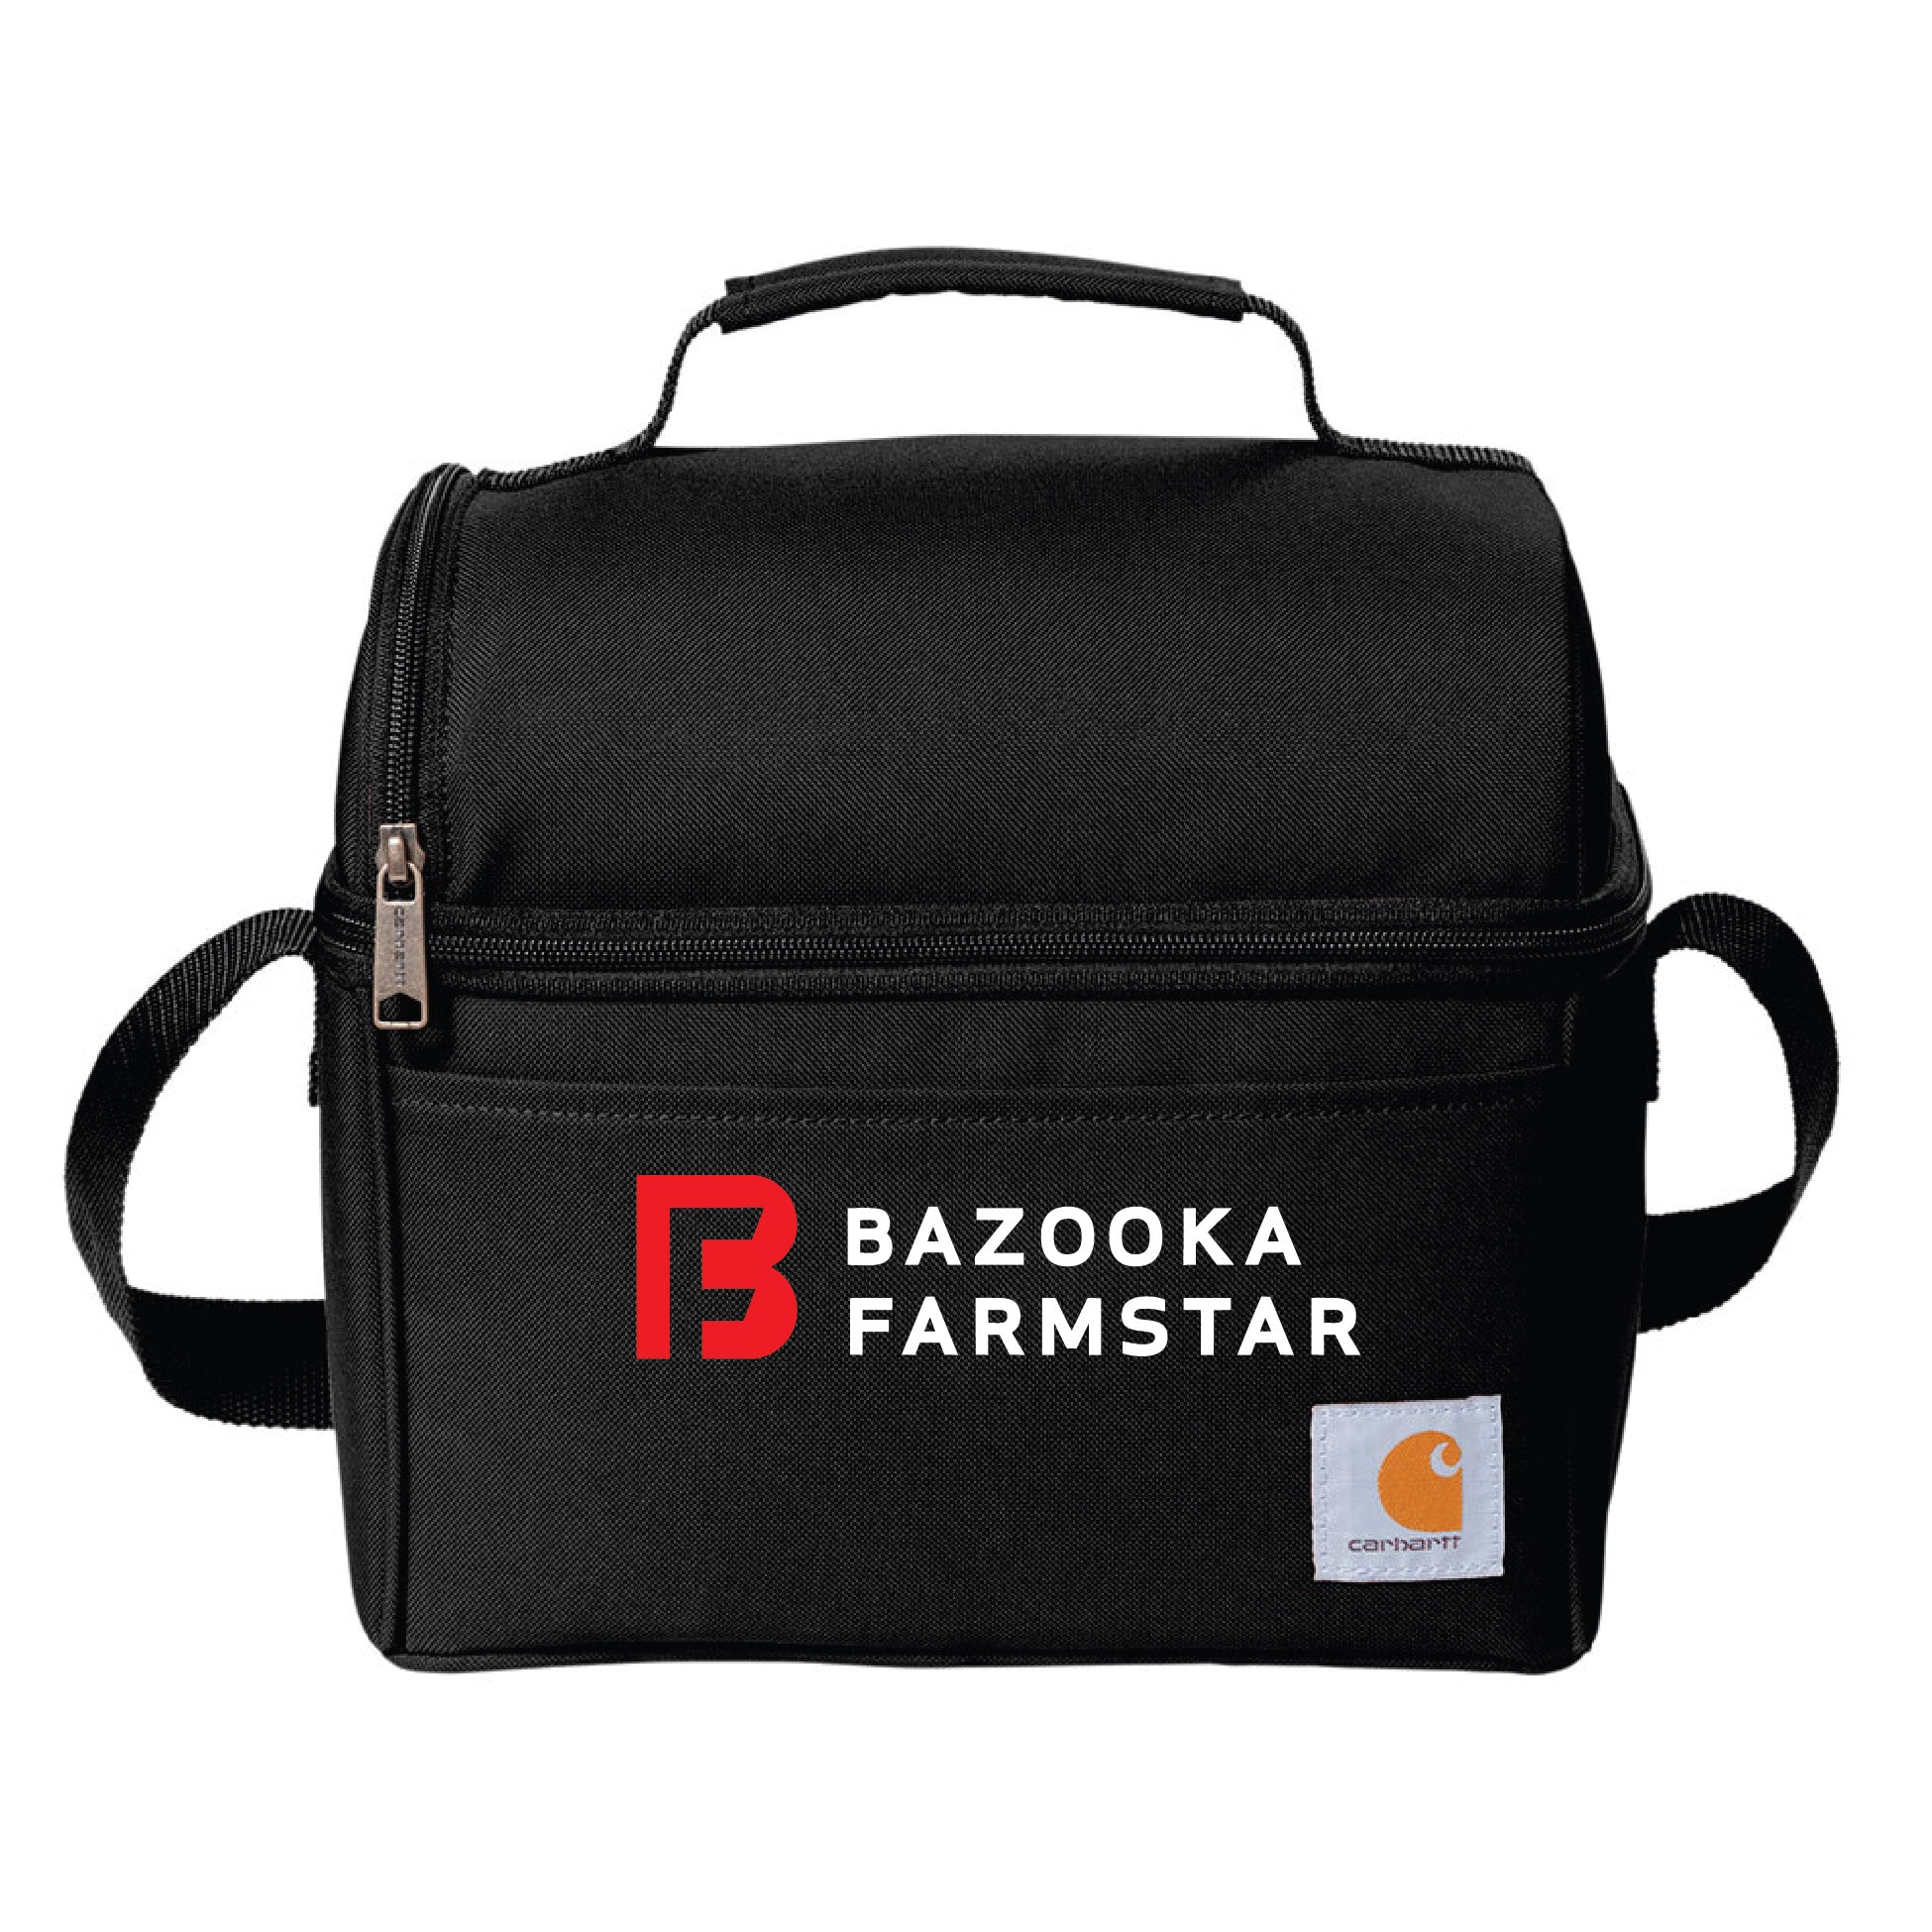 Bazooka Farmstar Carhartt 6-Can Cooler